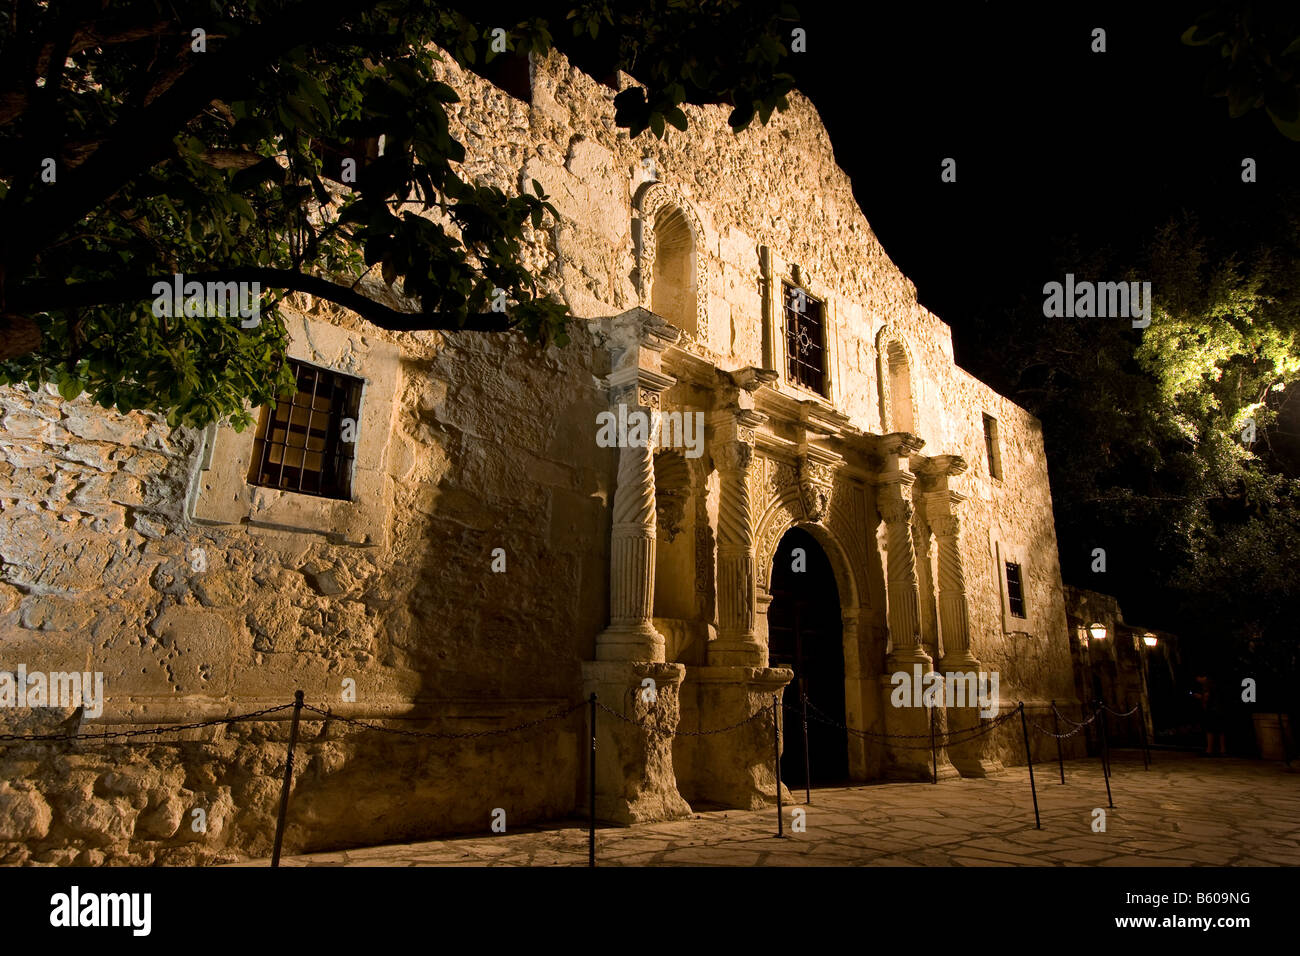 La chapelle d'Alamo à San Antonio (Texas) États-Unis Banque D'Images